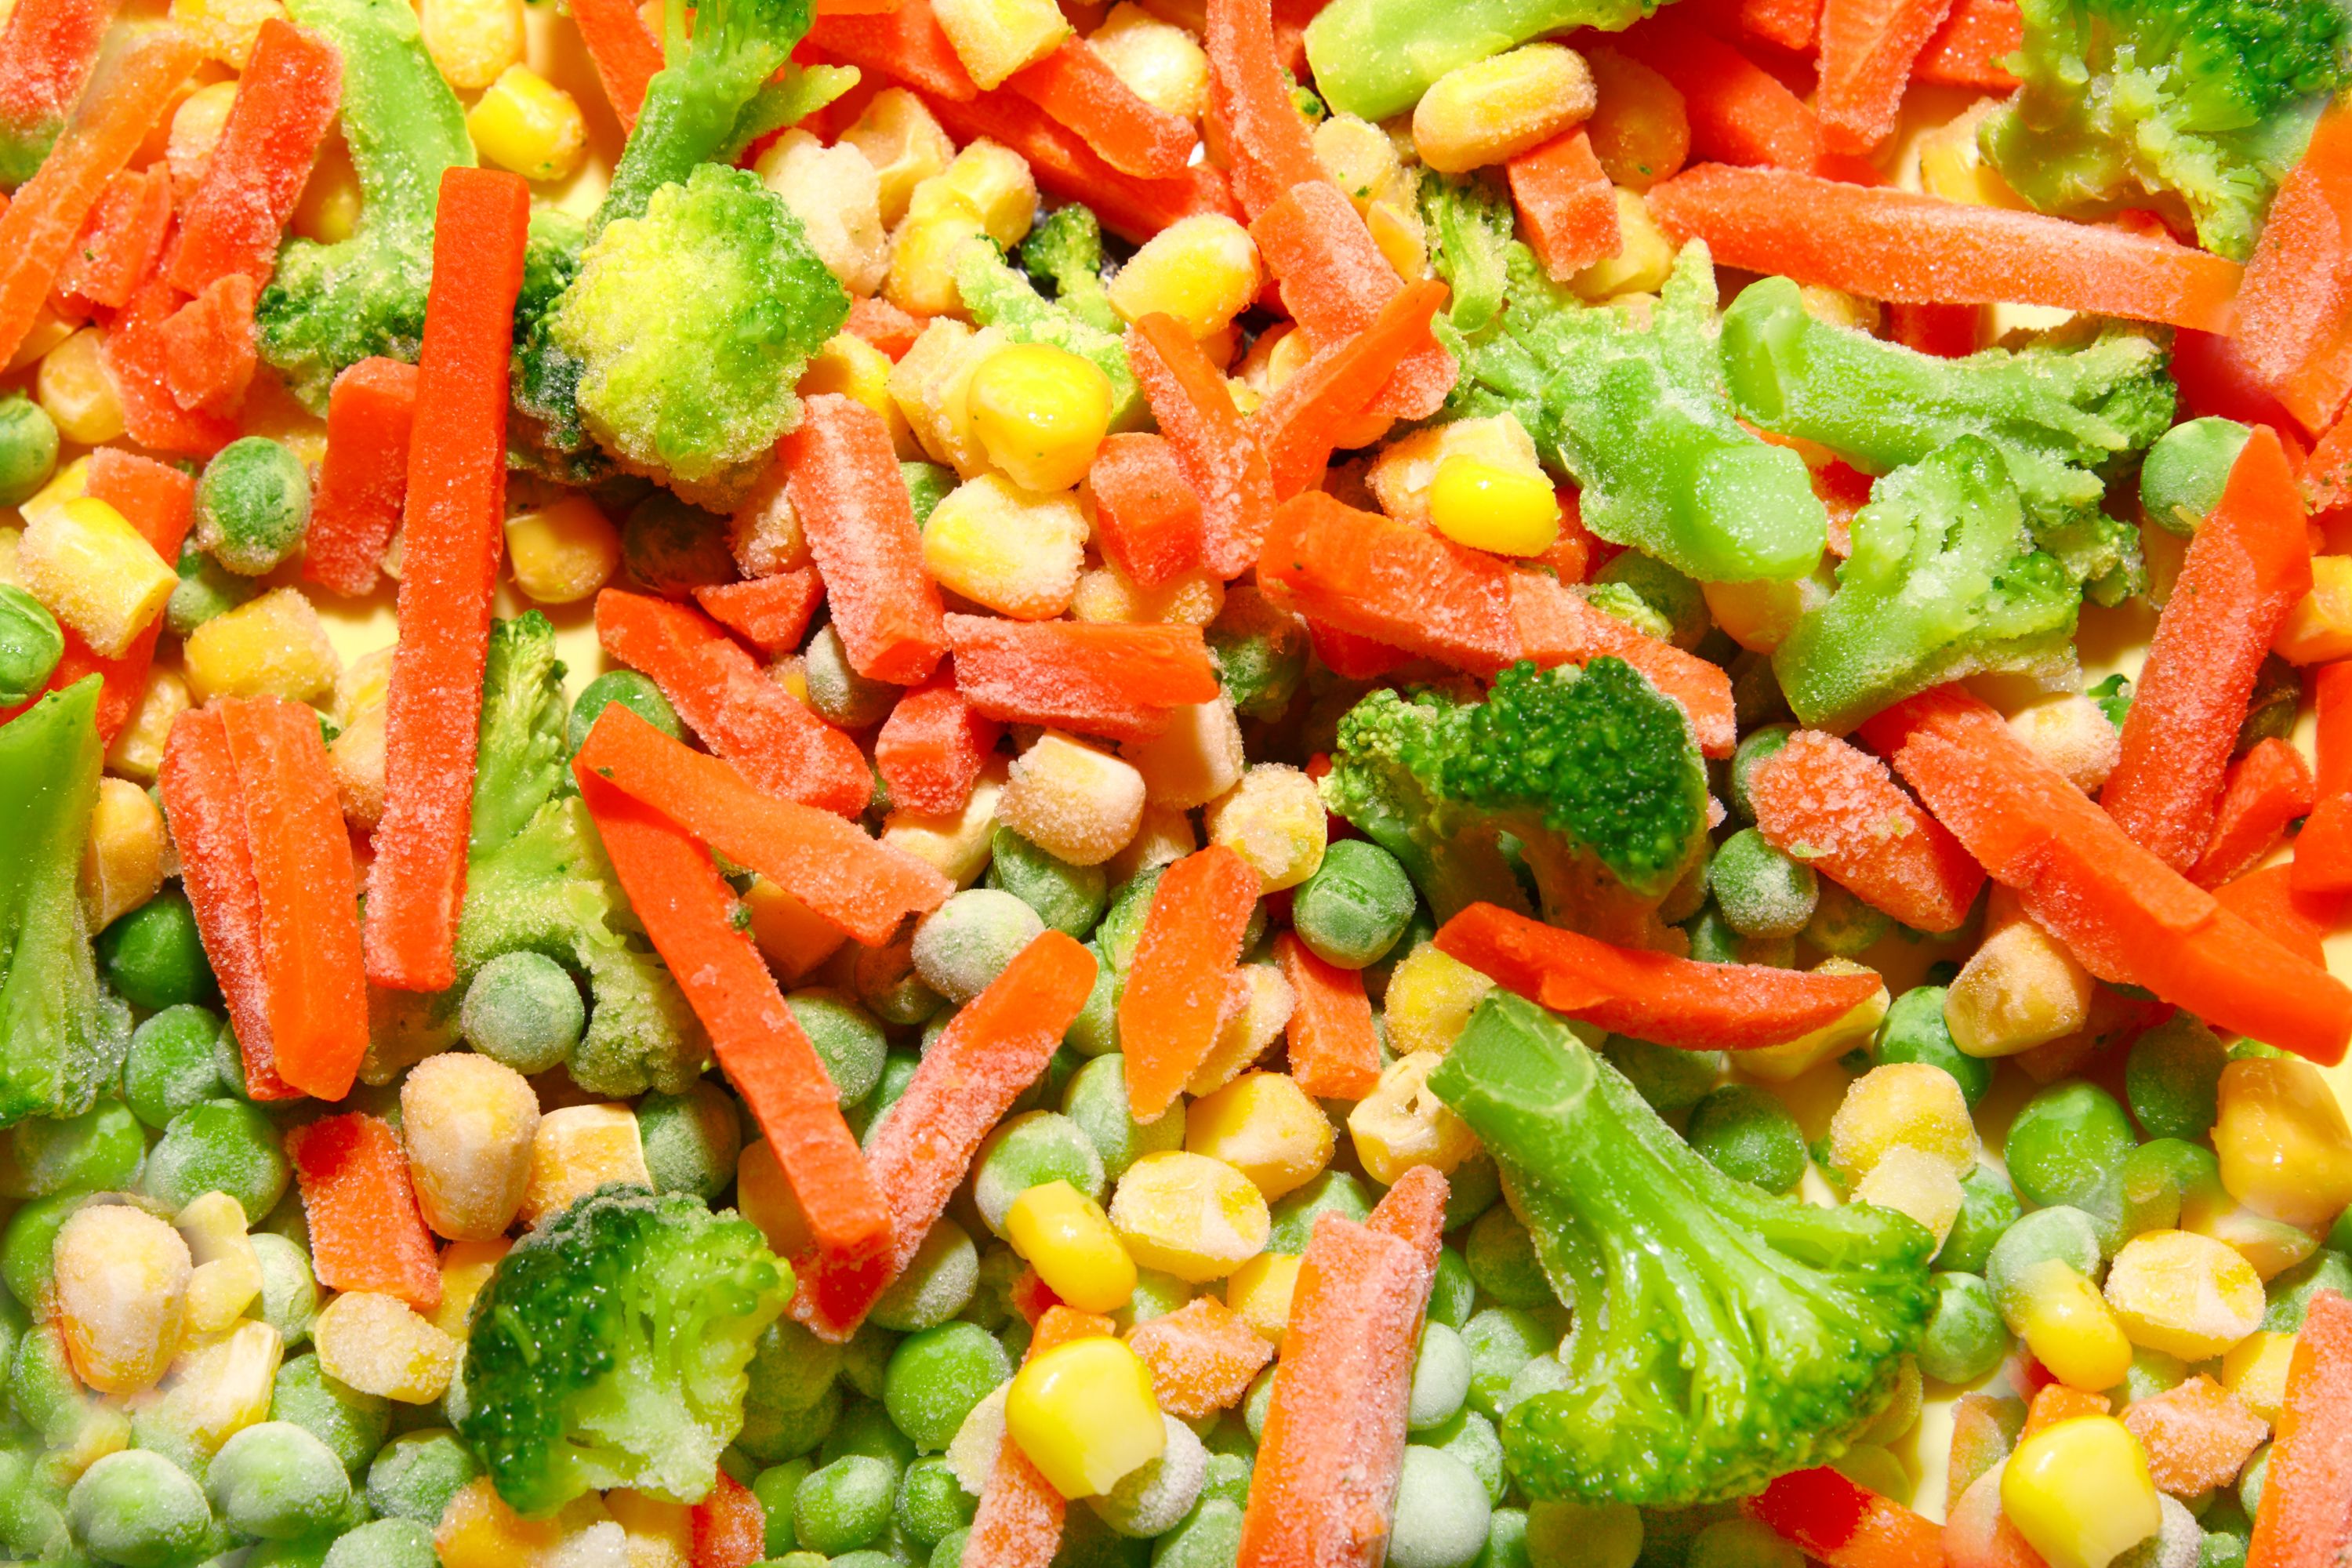 Mixed vegetables. Замороженные овощи. Микс овощей. Замороженные овощи и фрукты. Заморозка овощей.